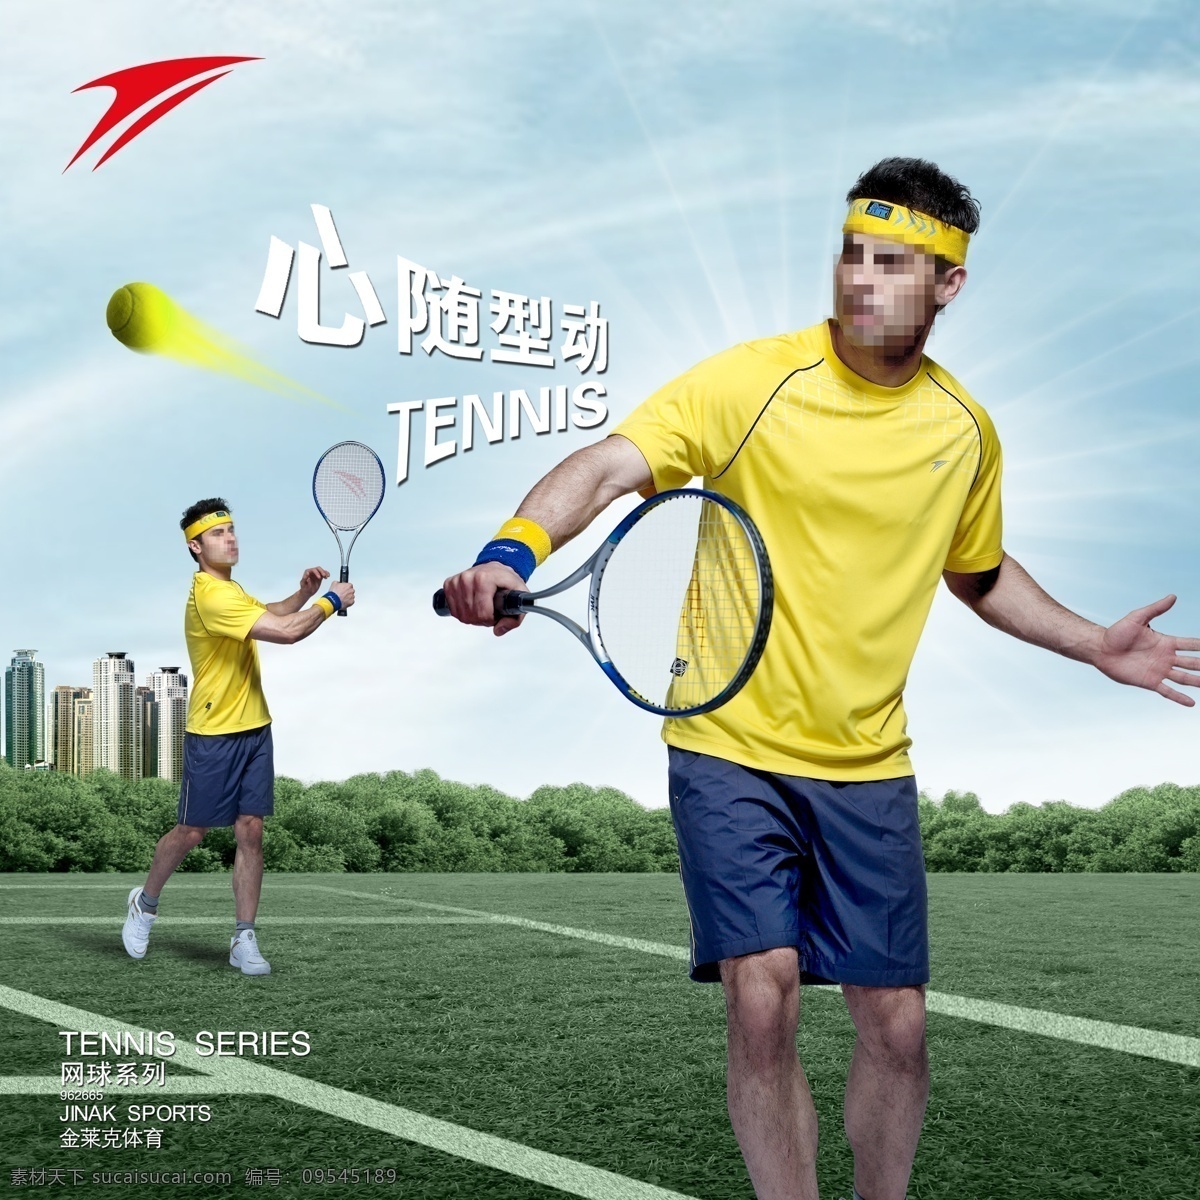 金莱克 运动 系列 海报 金莱克体育 网球系列海报 金莱克标志 网球运动员 运动场 心随型动 广告设计模板 源文件 分层 红色